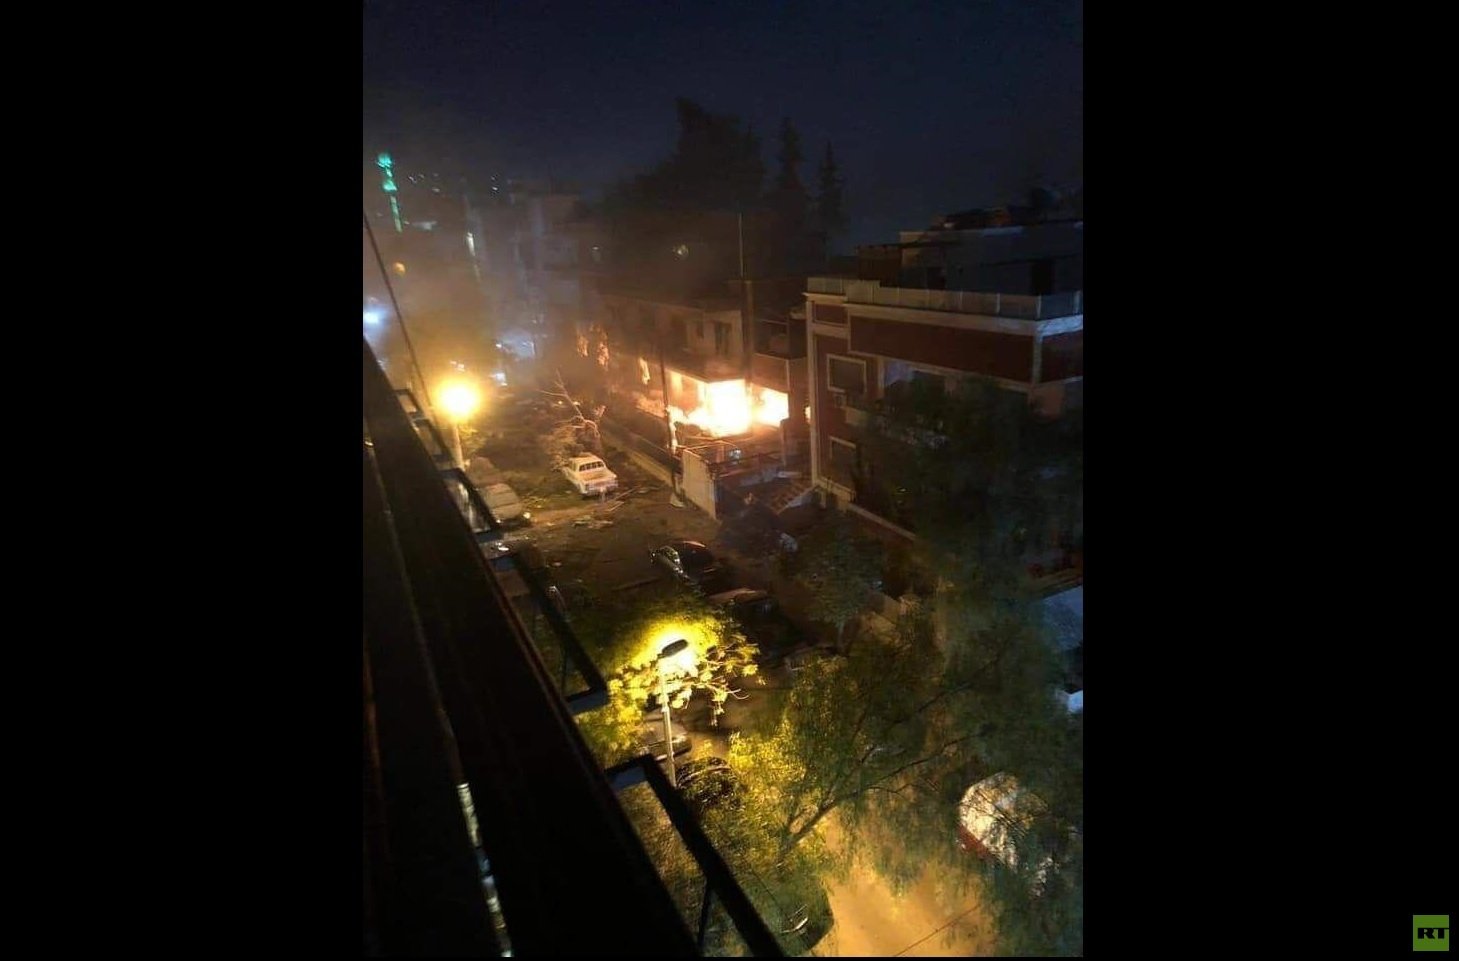 قتلى وجرحى بغارة إسرائيلية استهدفت مبنى مدنيا في دمشق